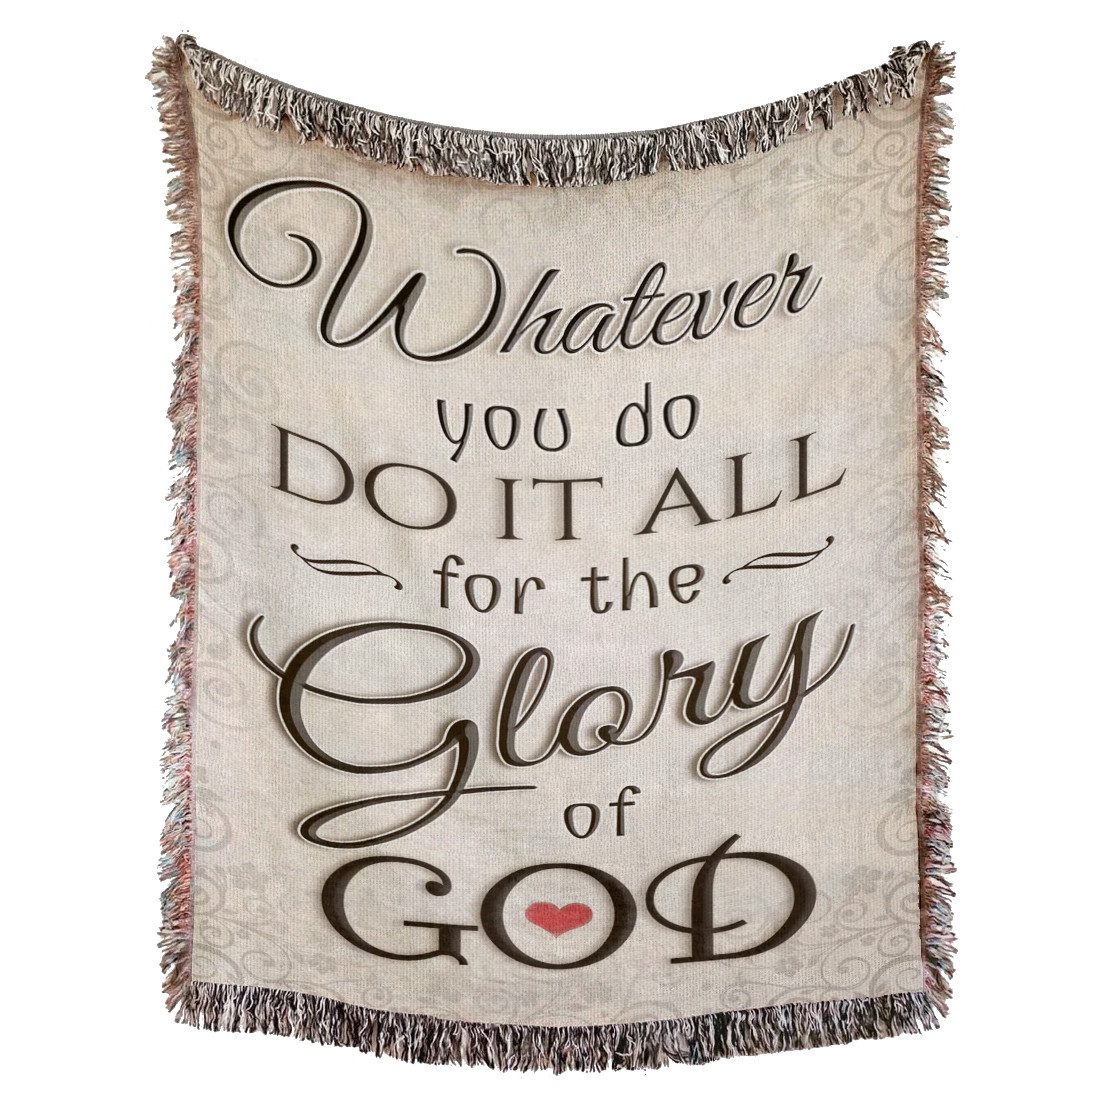 Glory of God Woven Blanket - Christian Woven Throw Blanket - Glory of God Tapestry Decor For Christian Blanket